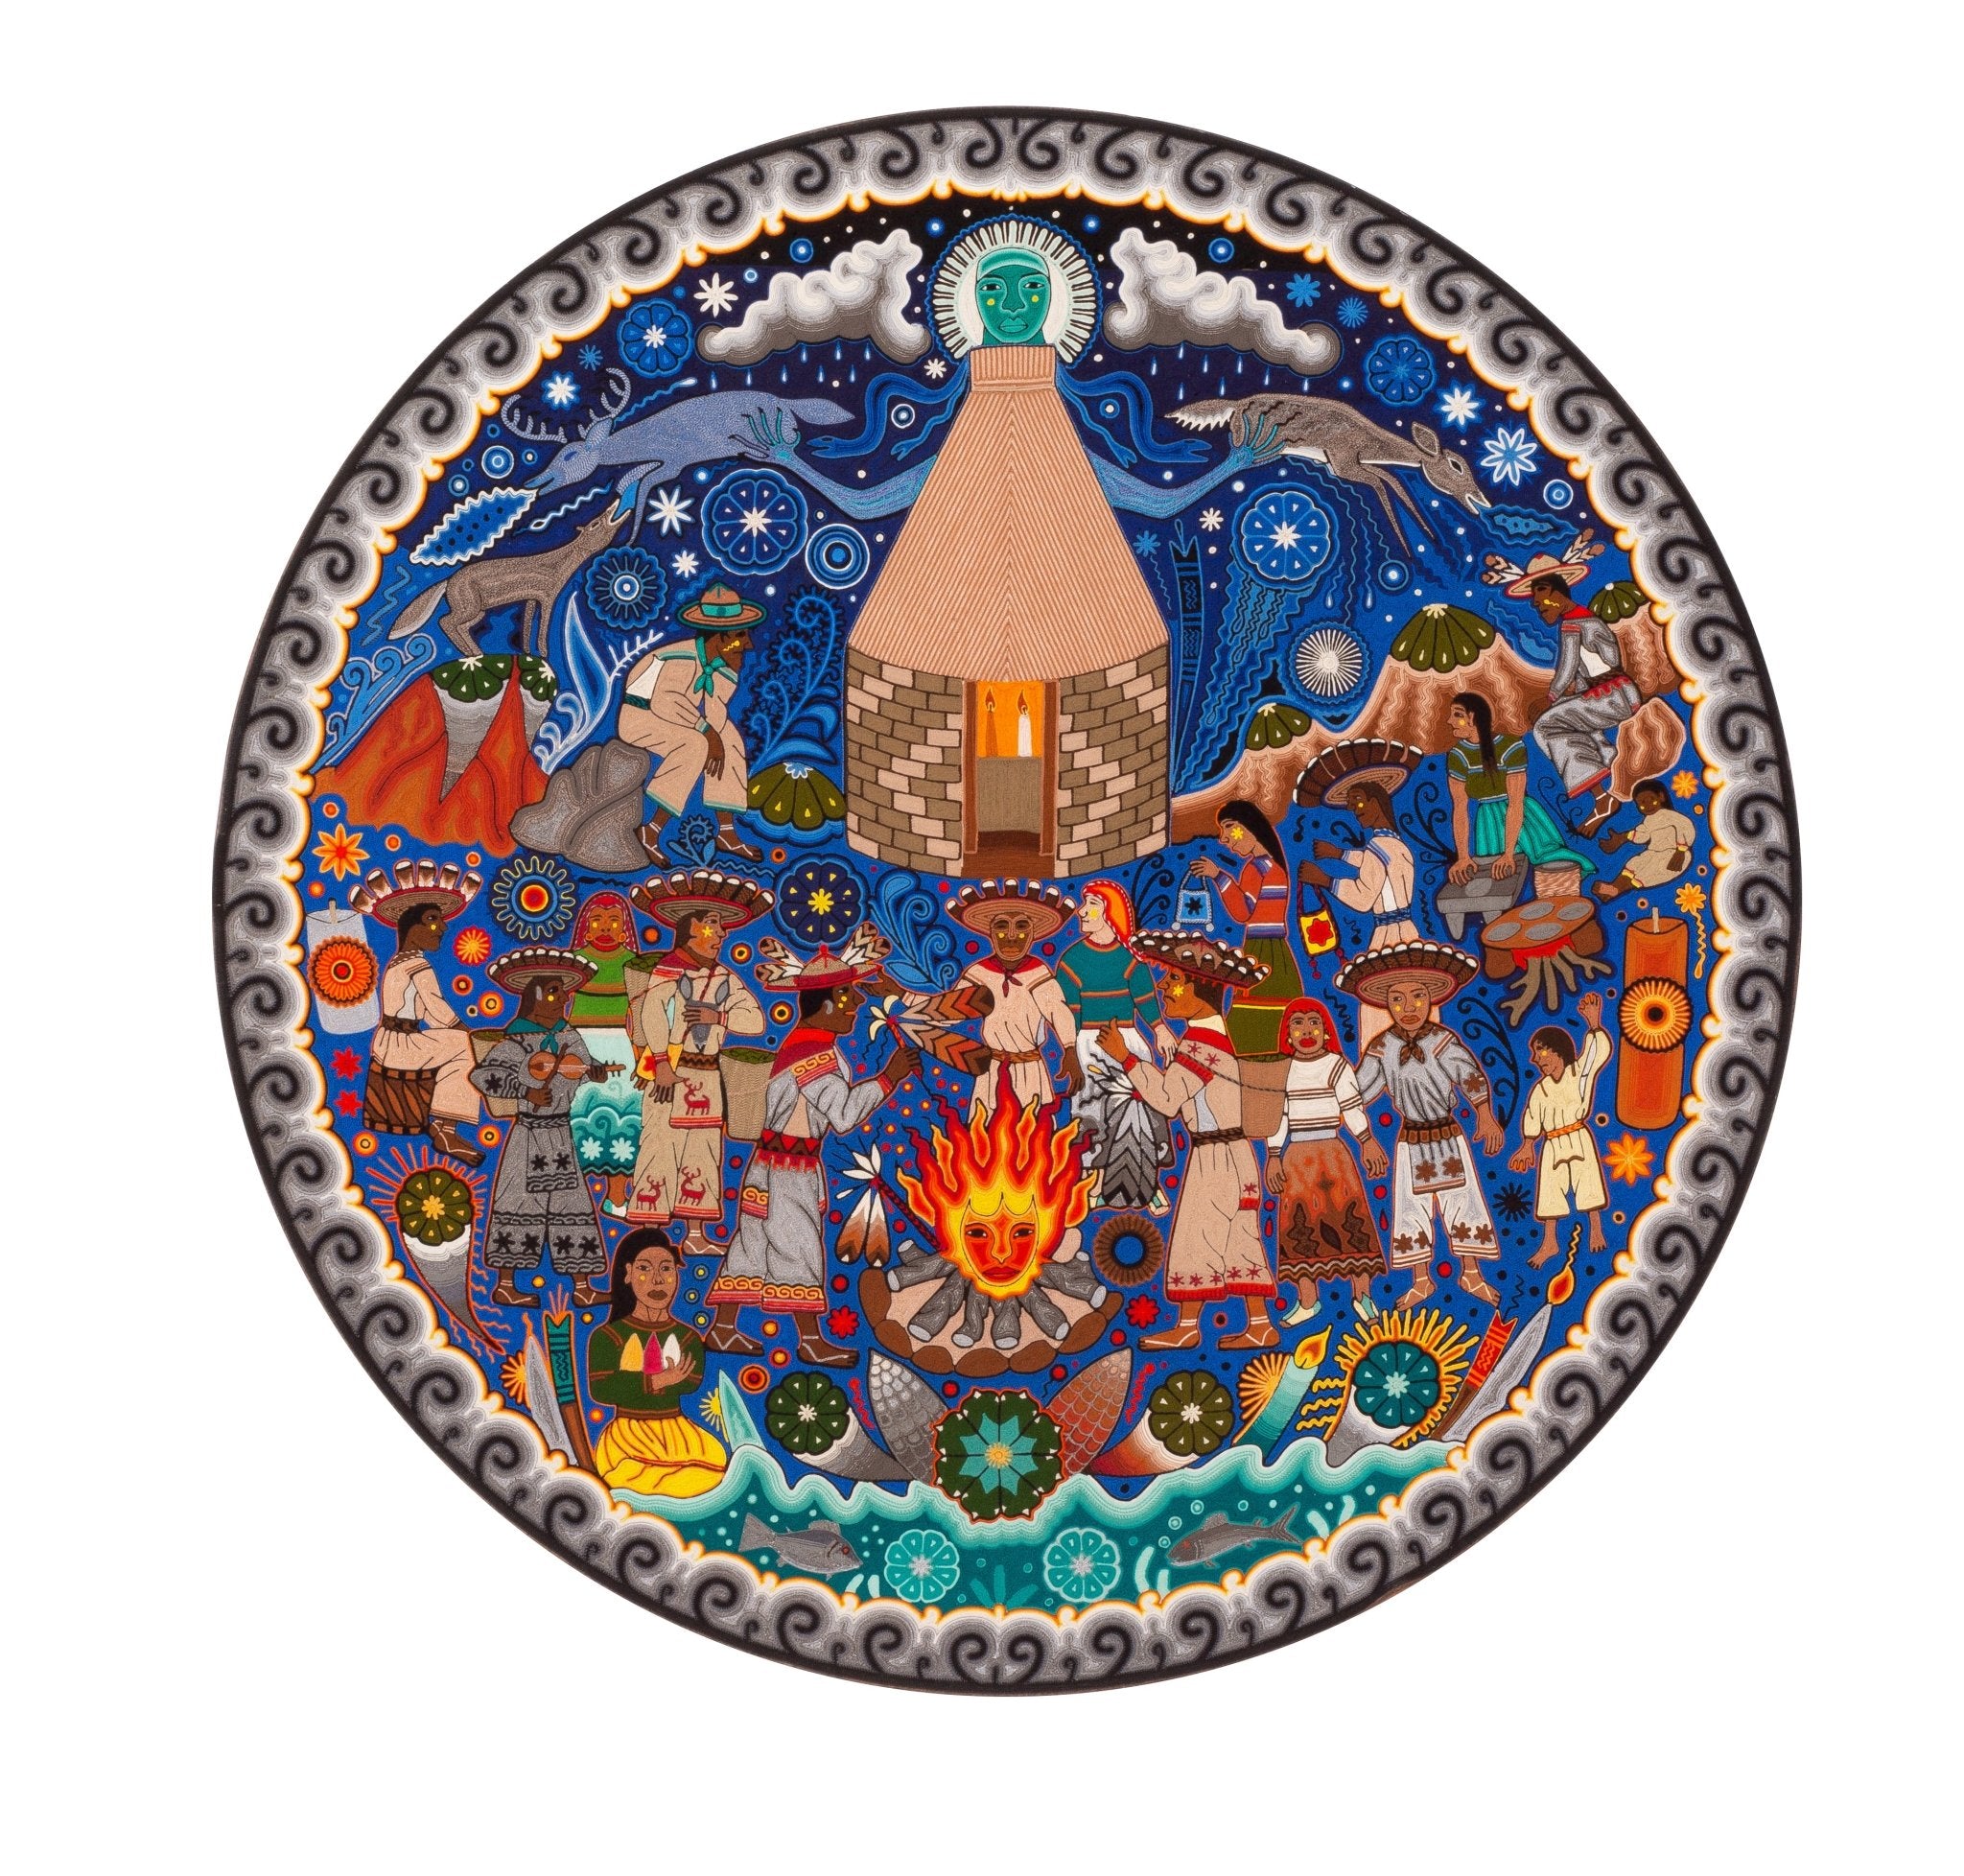 Hikuri Neixa - Peyote dance in ceremonial center - Huichol Art - Marakame